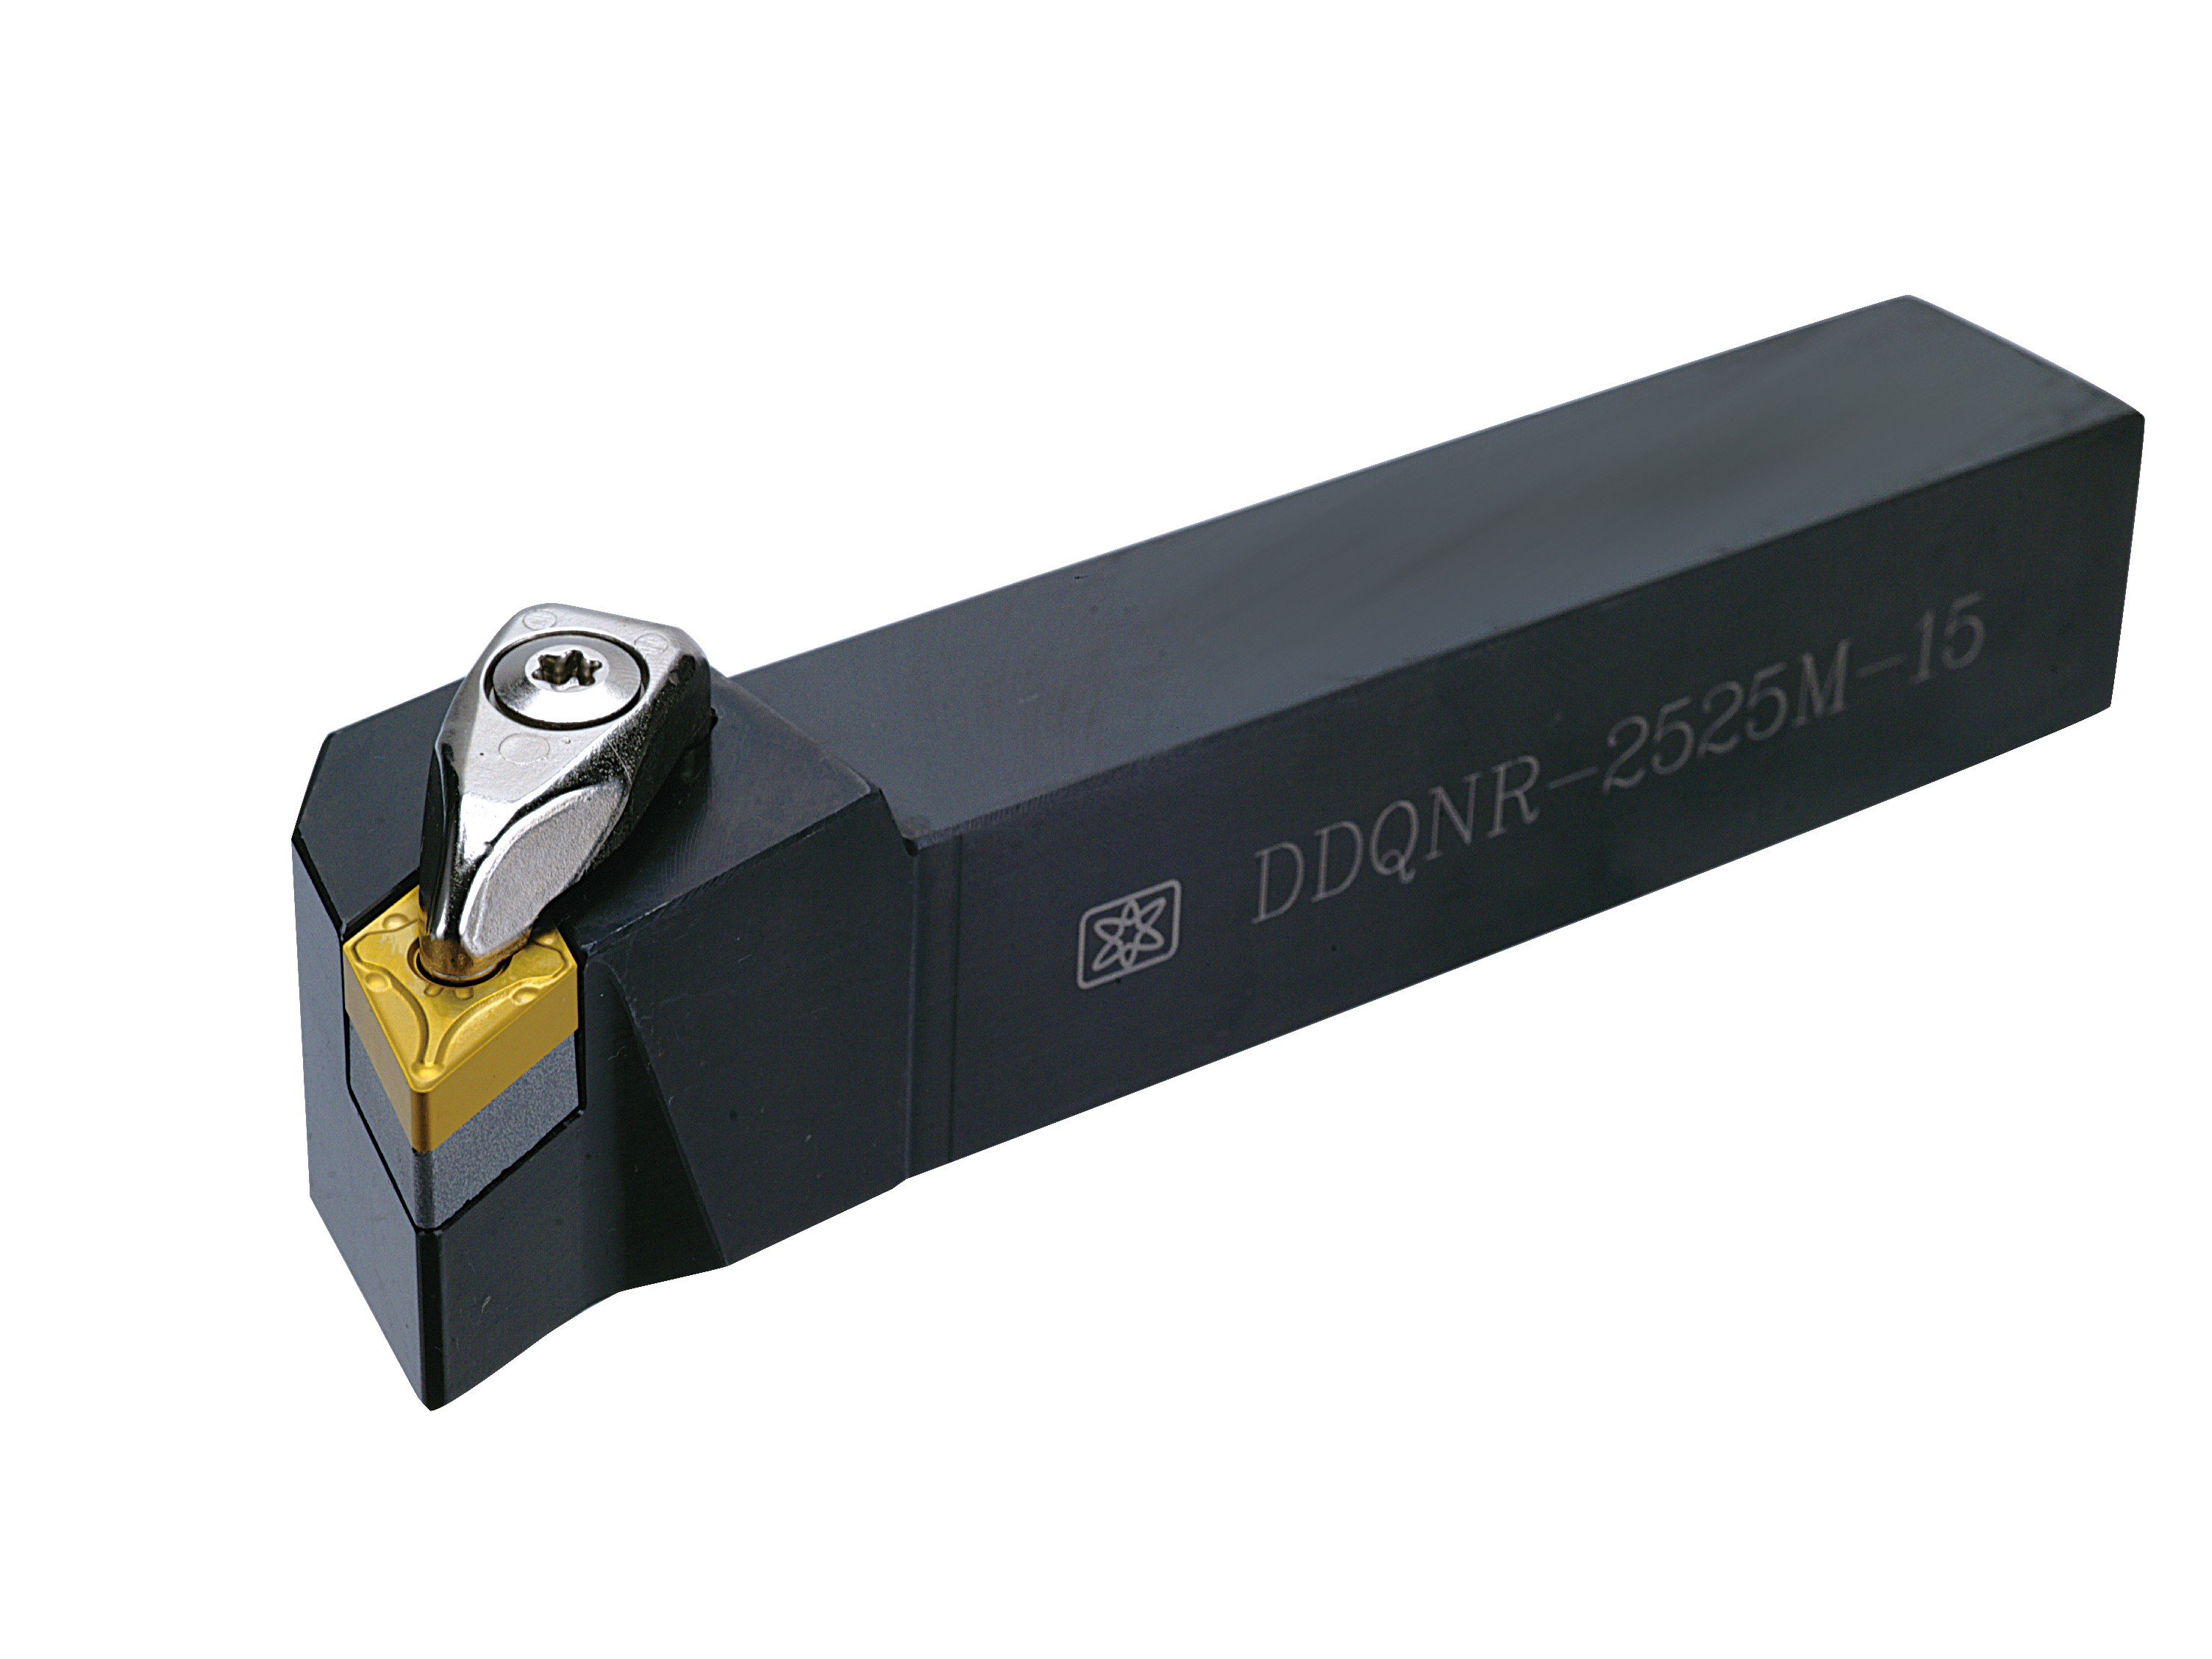 DDQNR (DNMG1504 / DNMG1506) External Turning Tool Holder